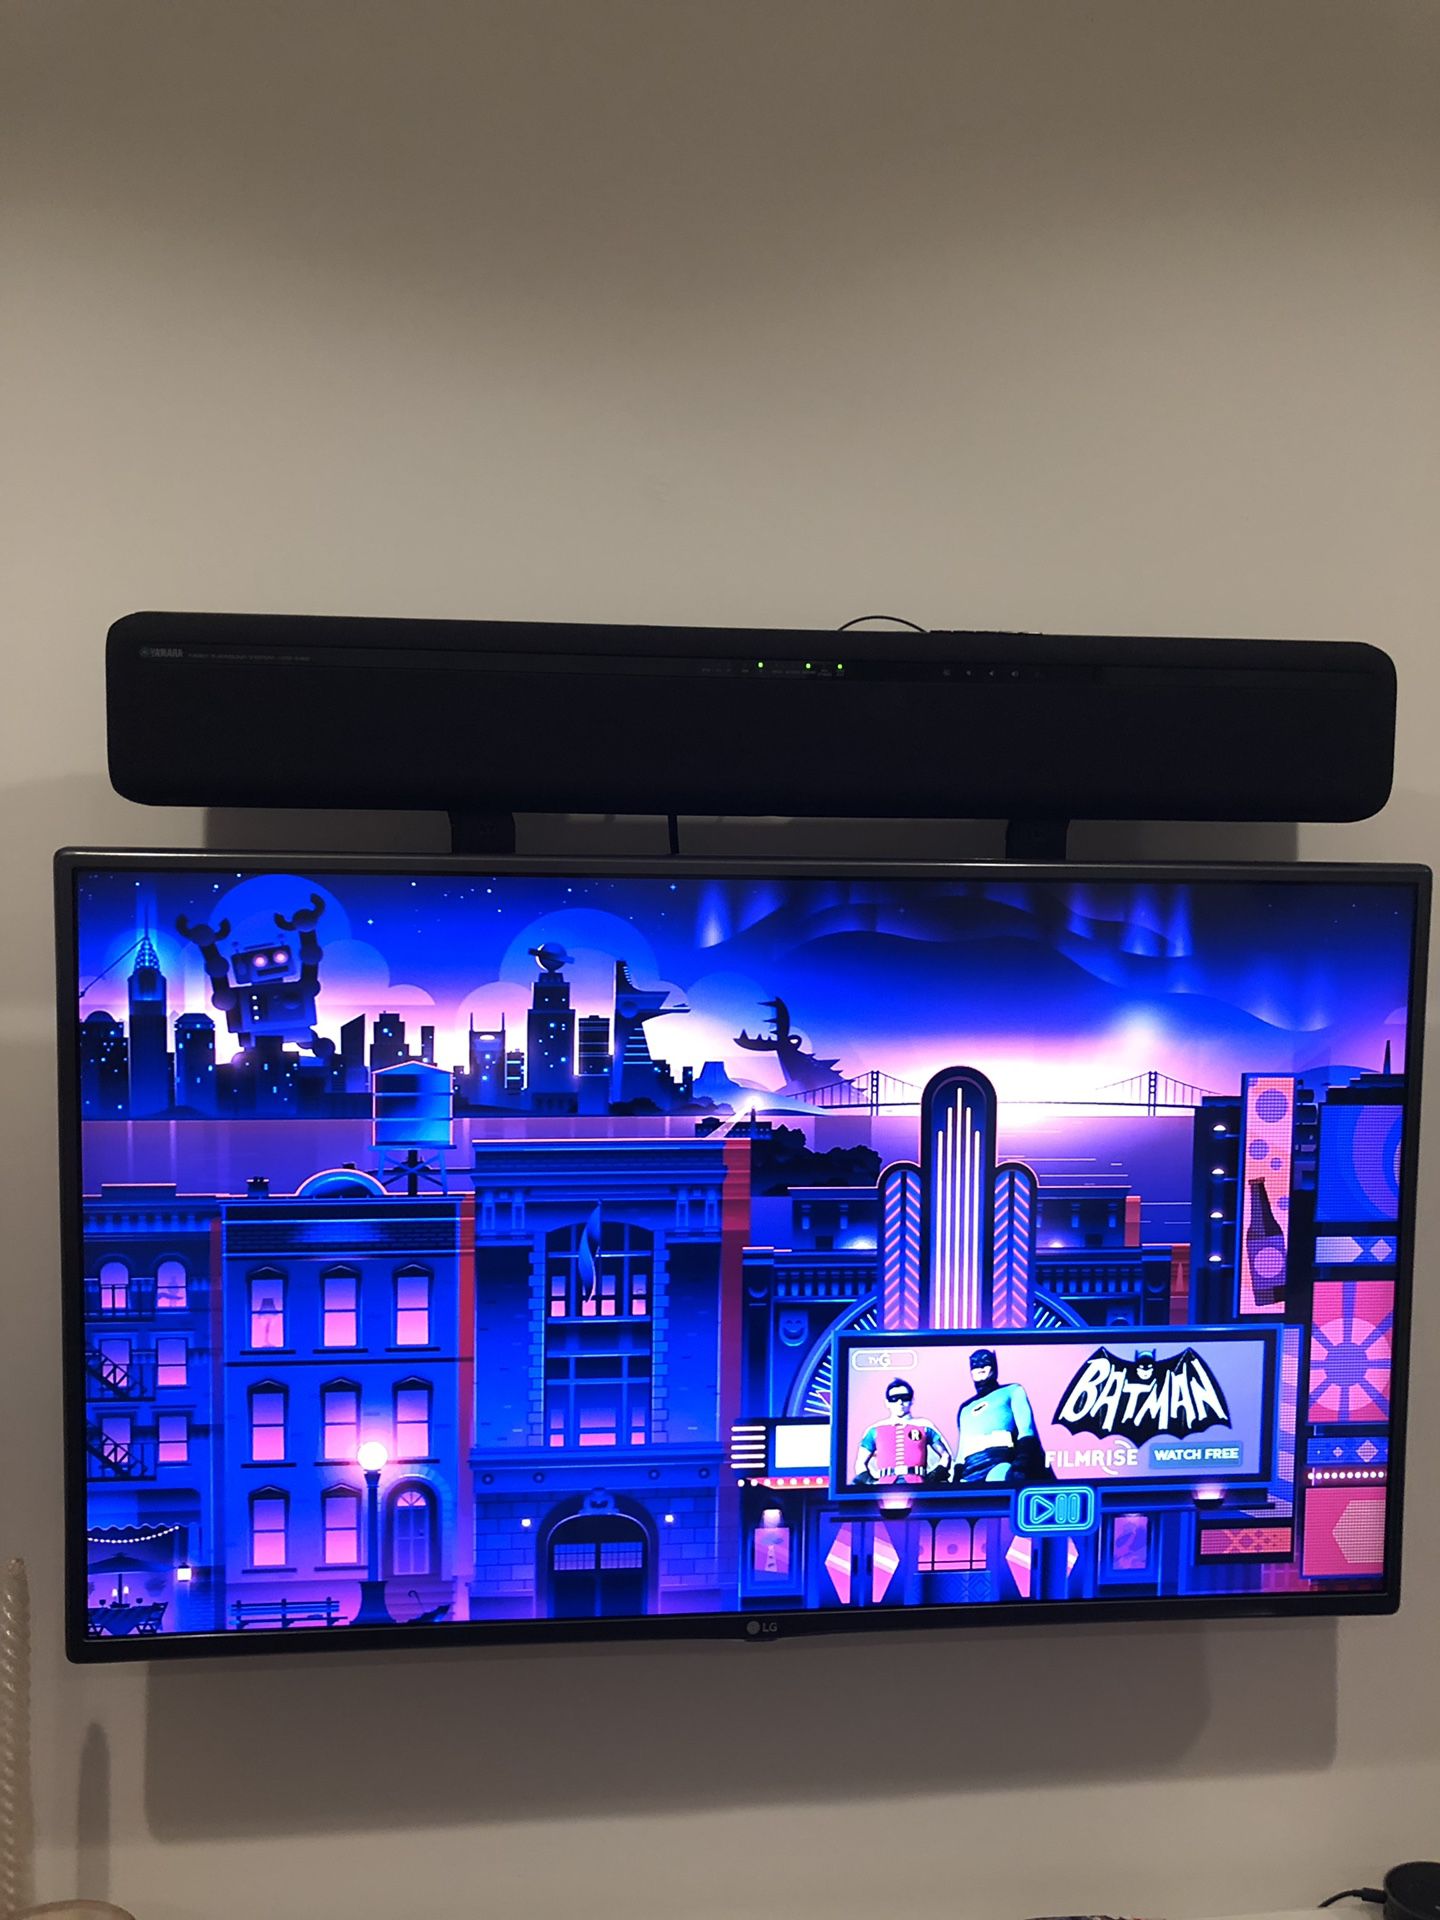 LG 42 inch HD TV